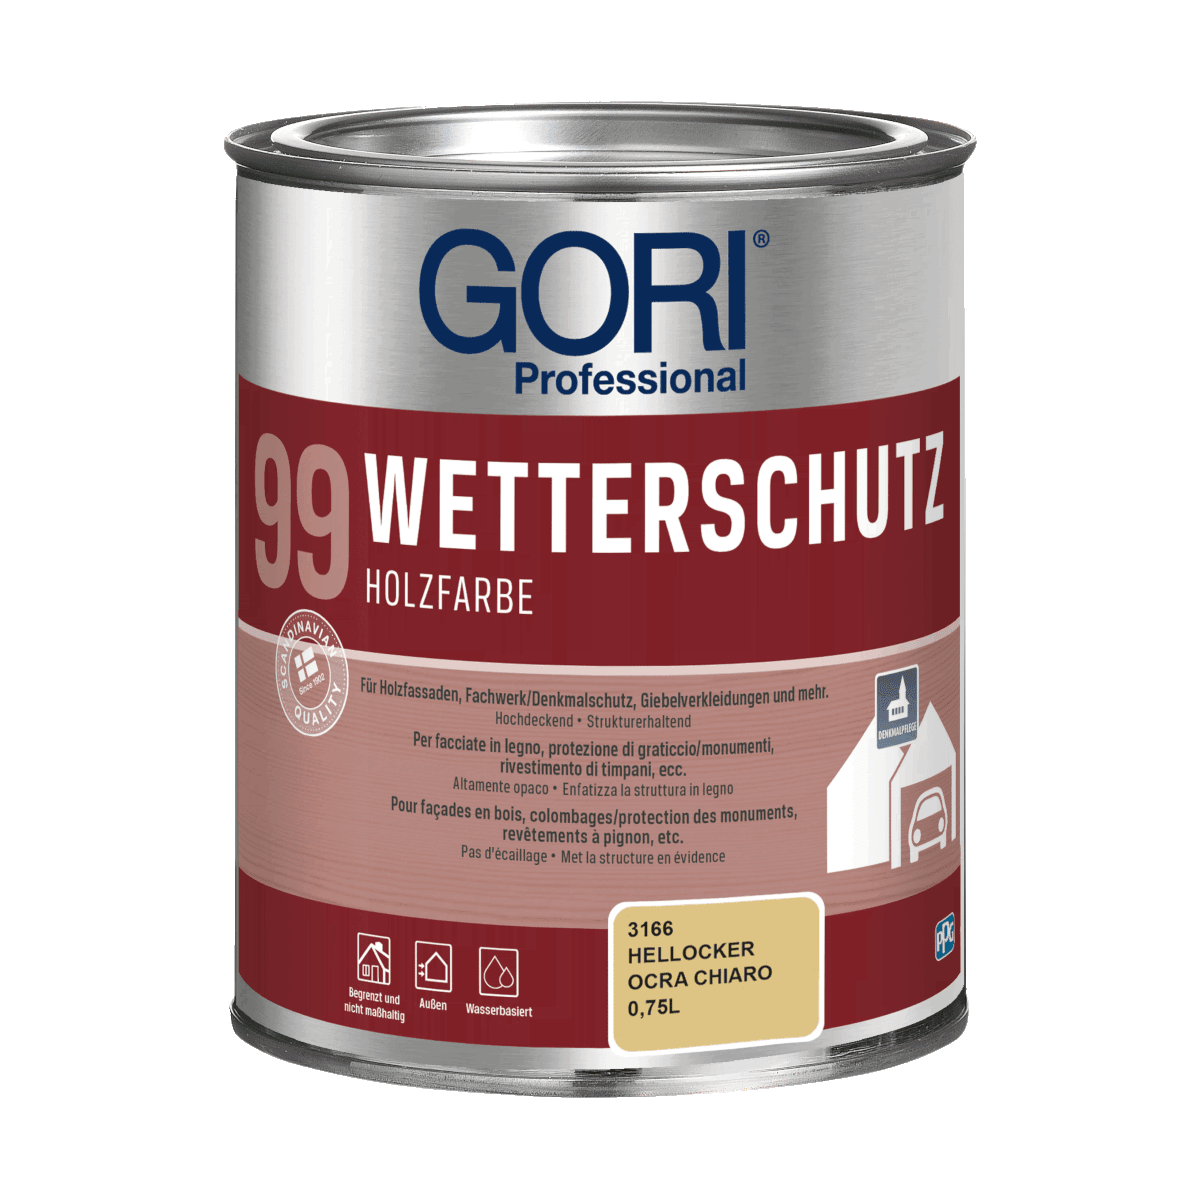 GORI 99 Wetterschutz von GORI - PPG Coatings Deutschland GmbH